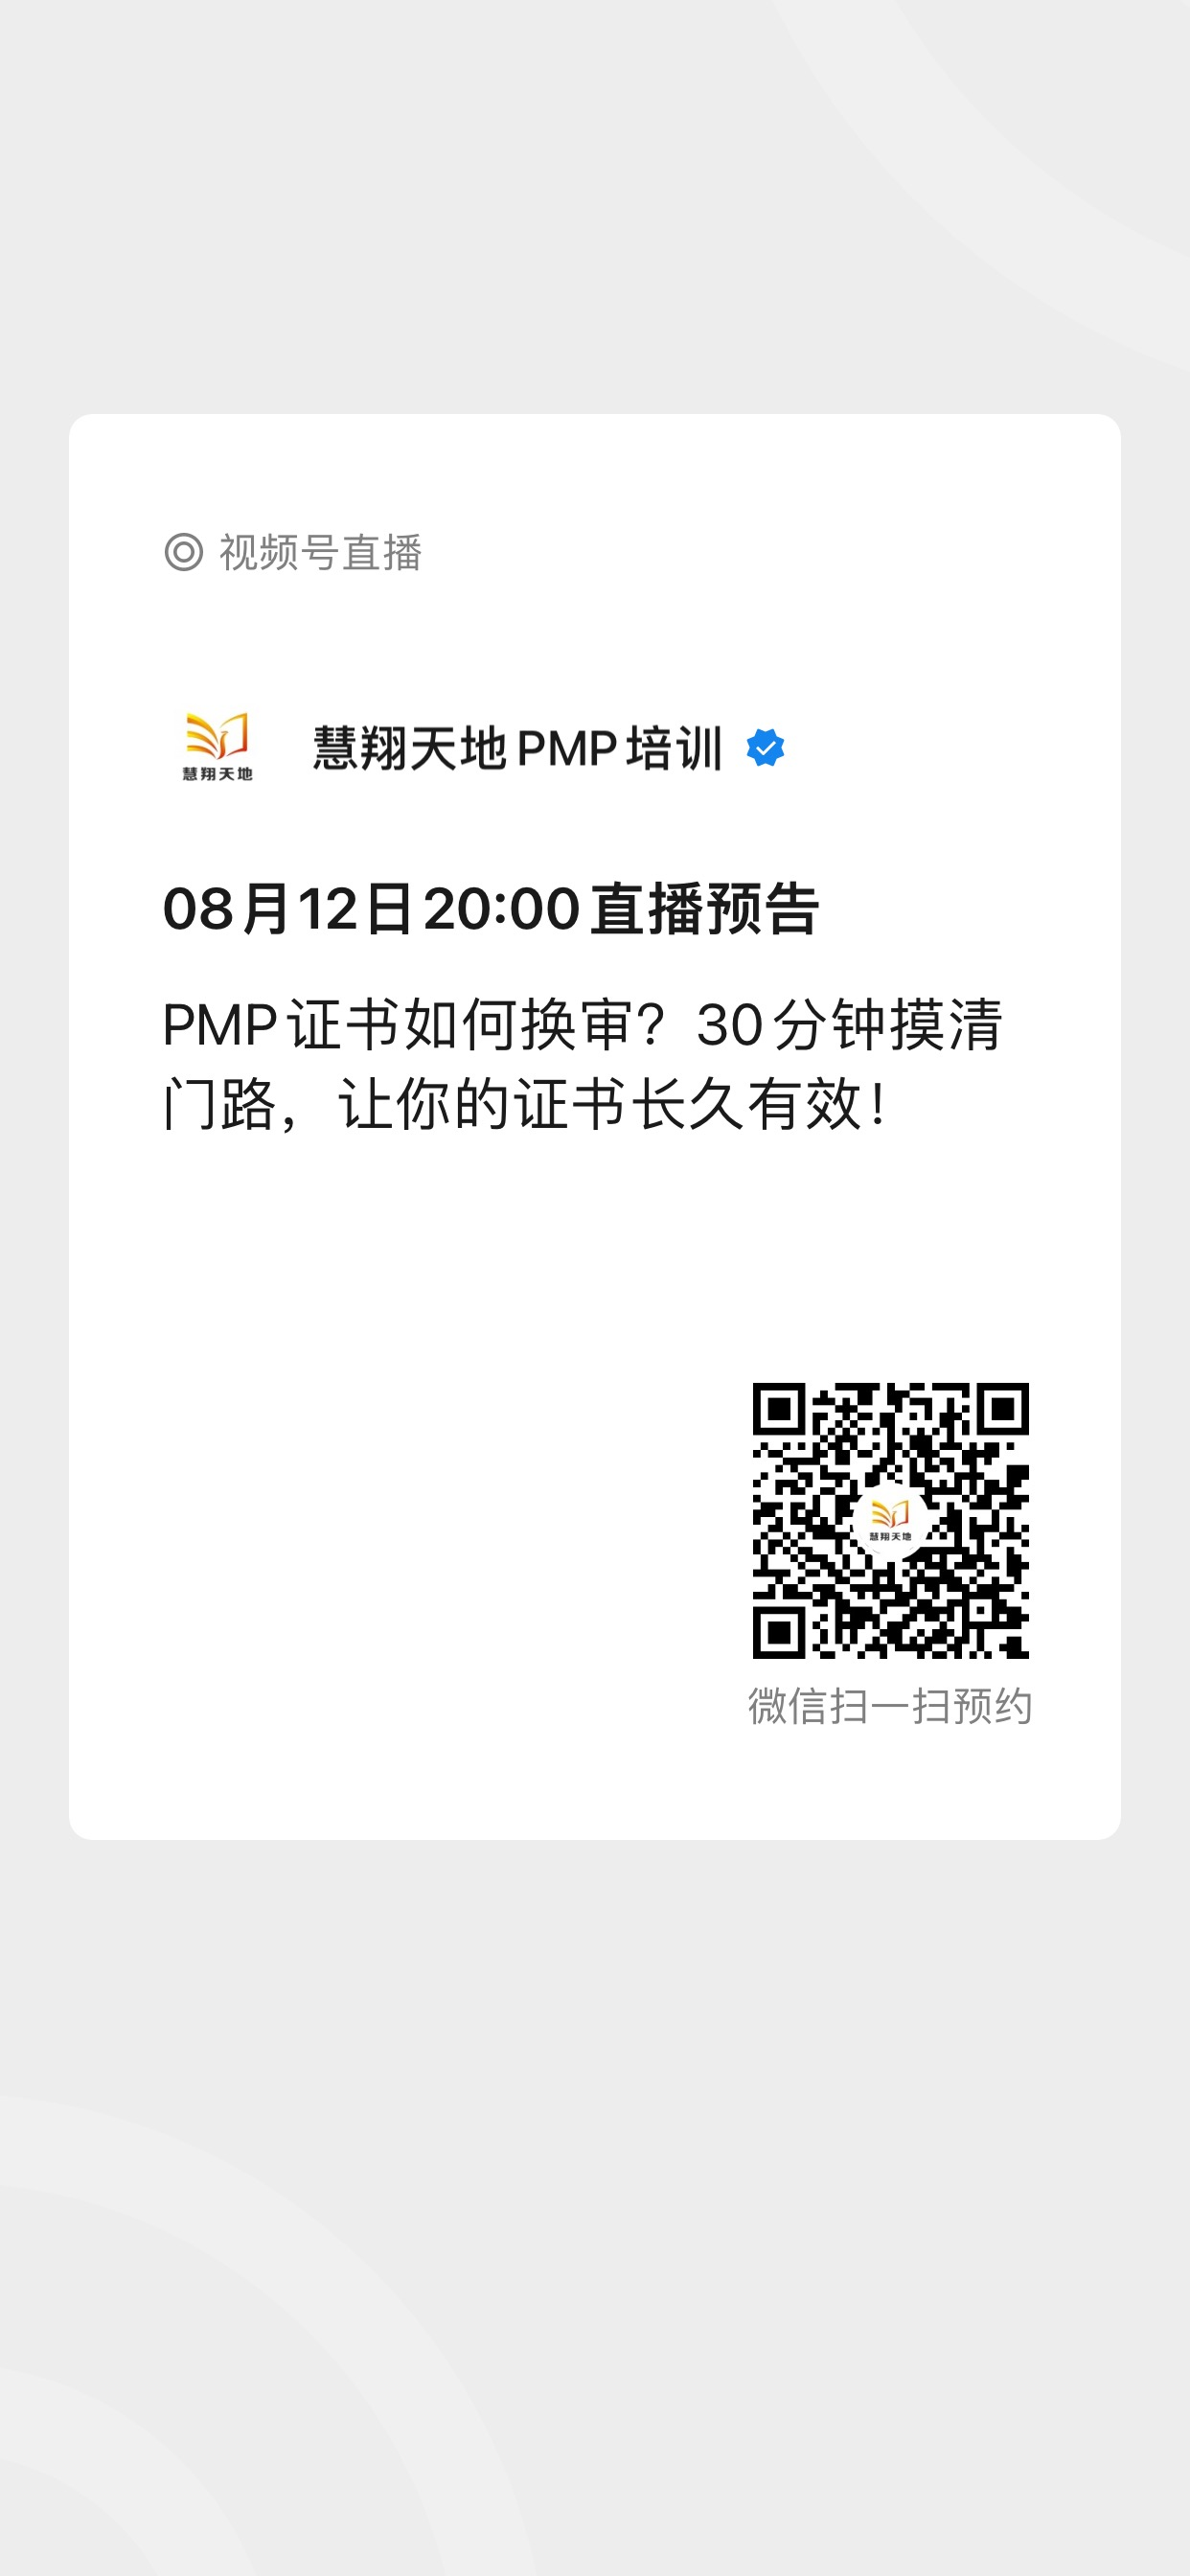 PMP证书换证